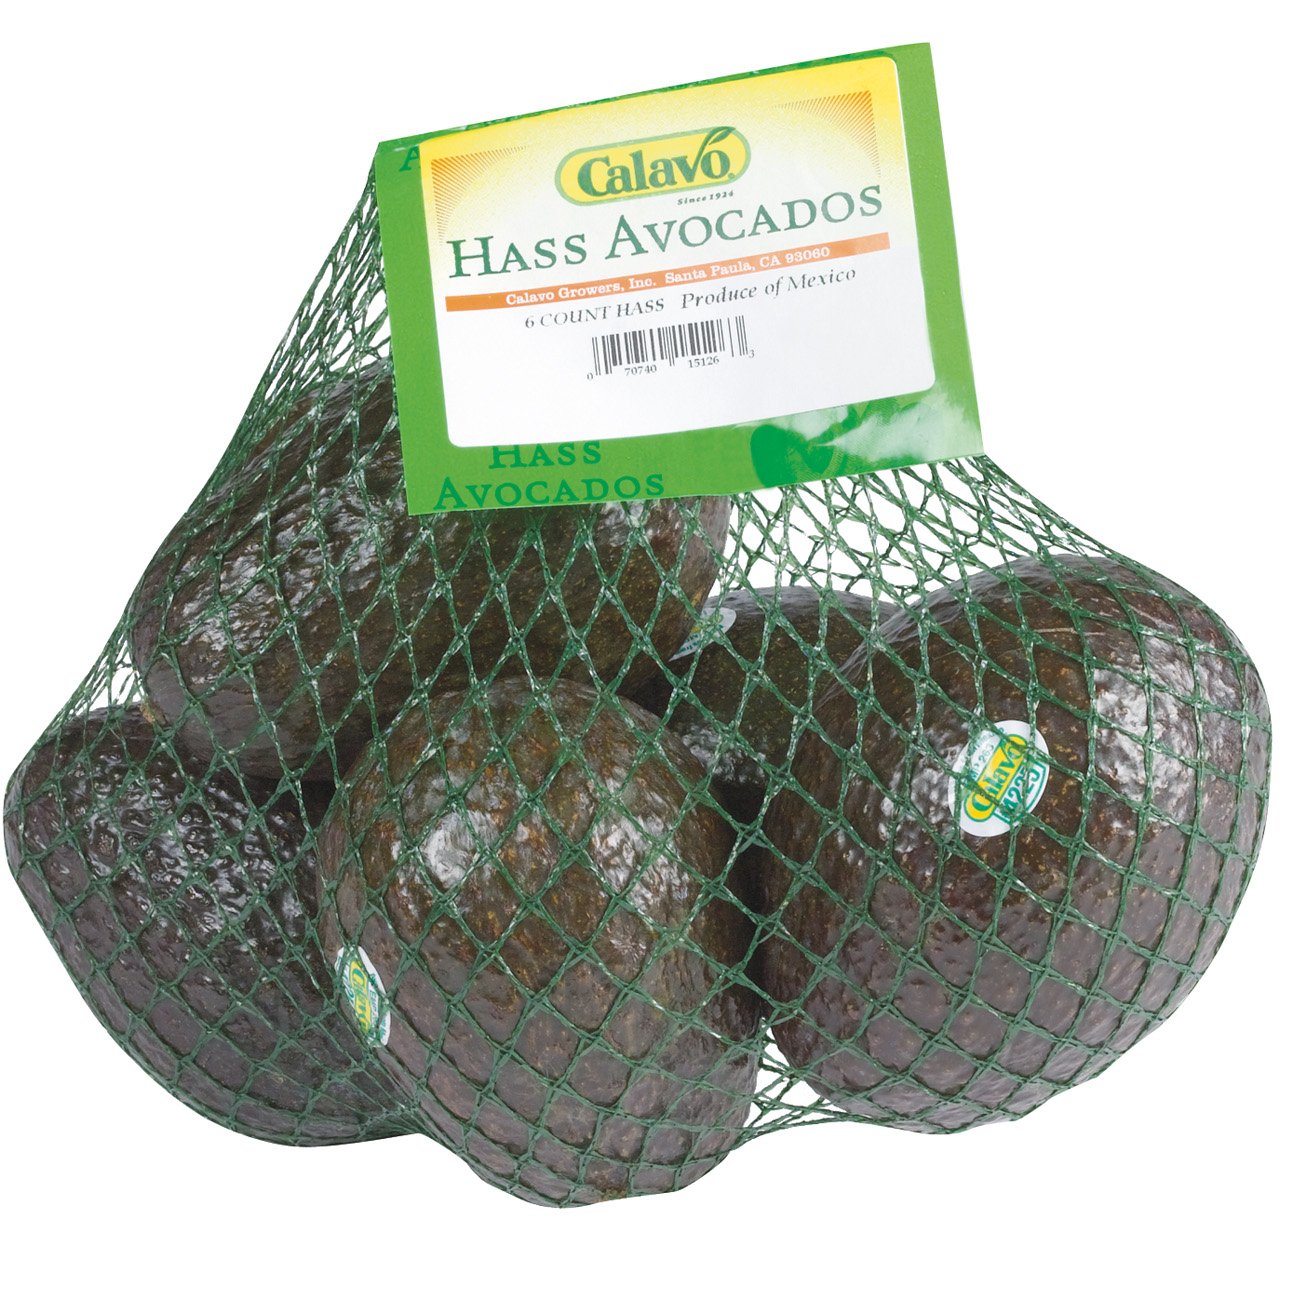 A bag of Avocados 